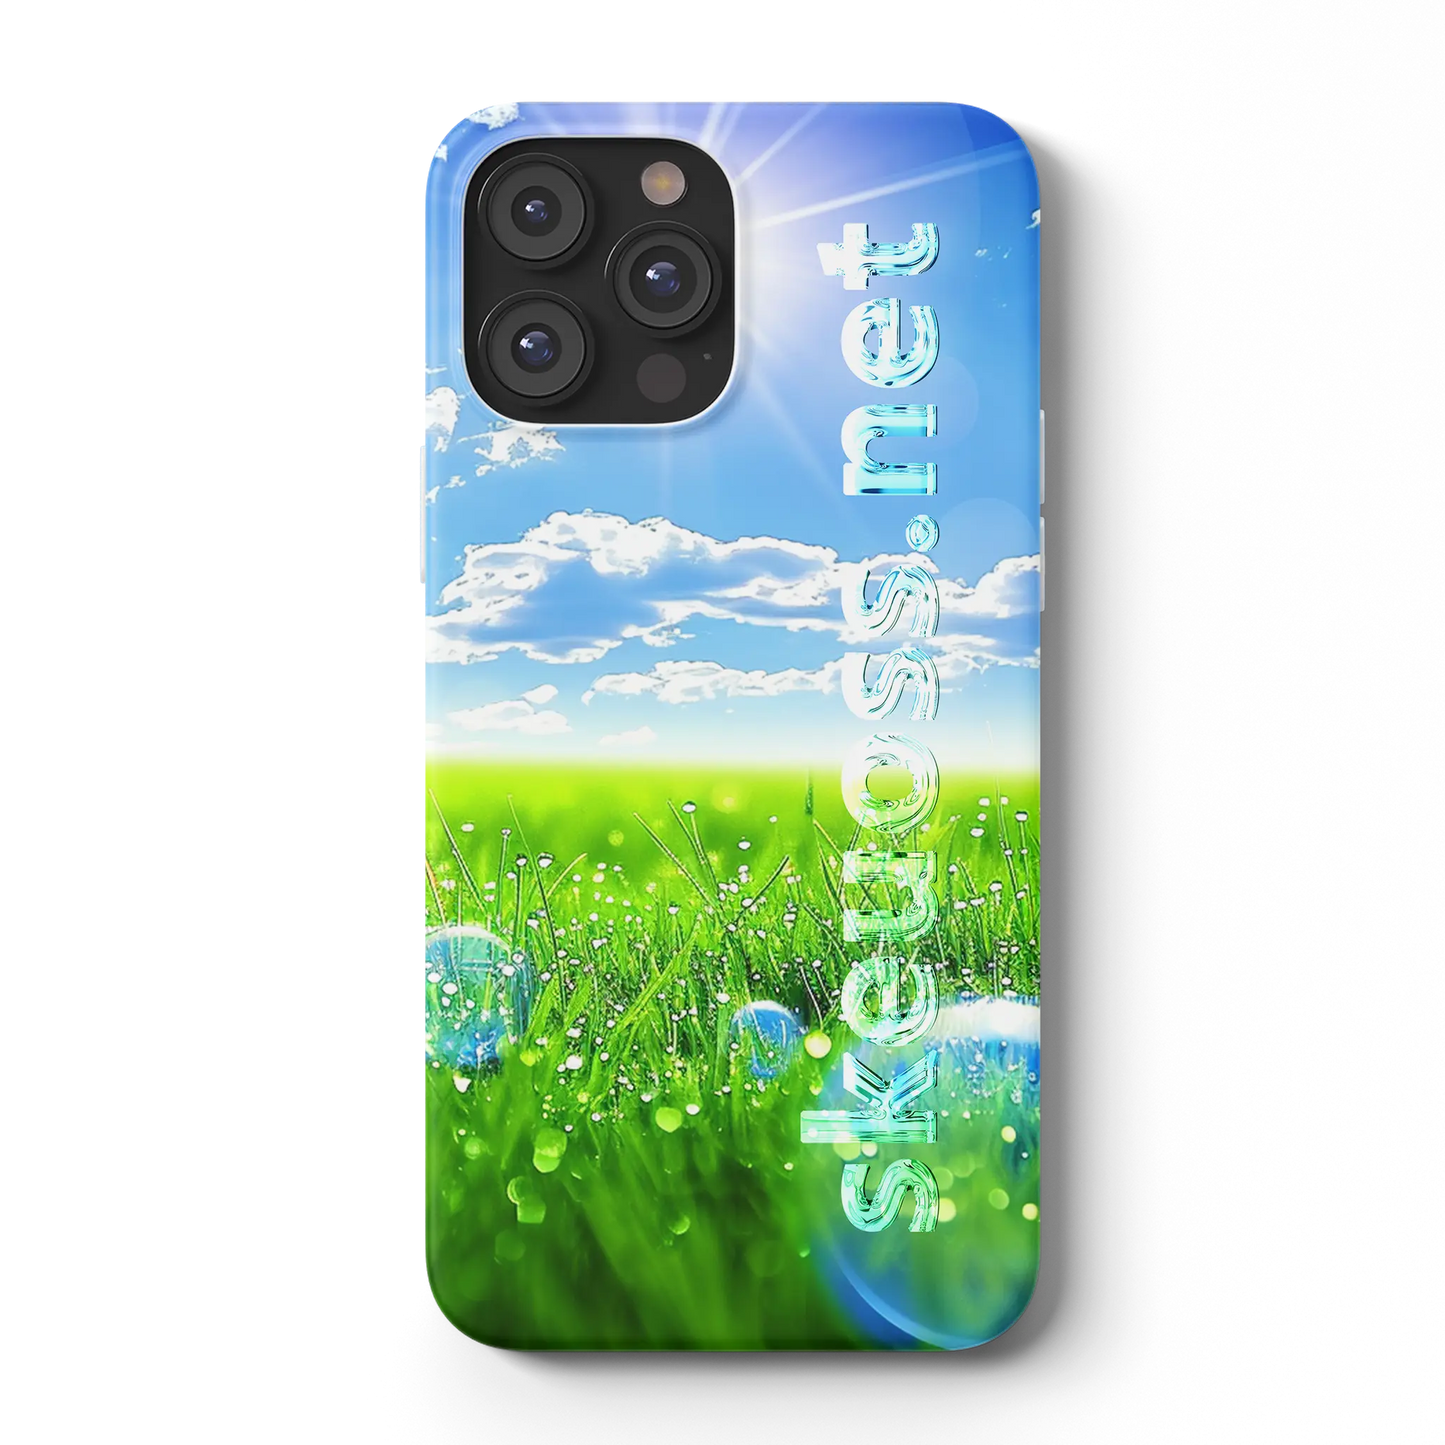 Frutiger Aero iPhone case - Design 458